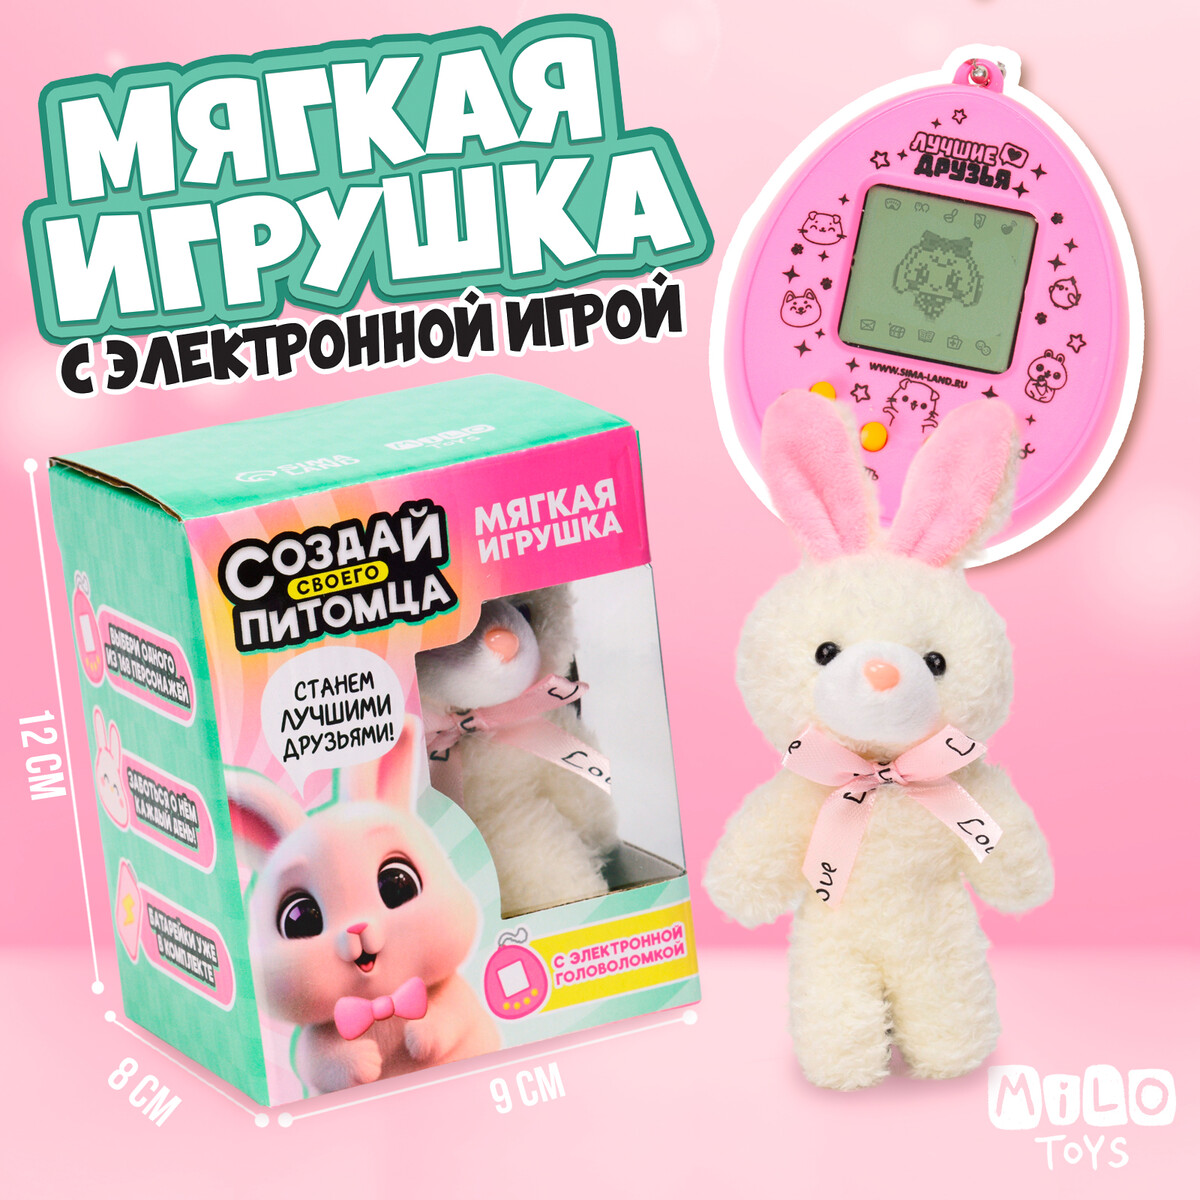 Мягкая игрушка с электронной головоломкой Milo toys, цвет розовый